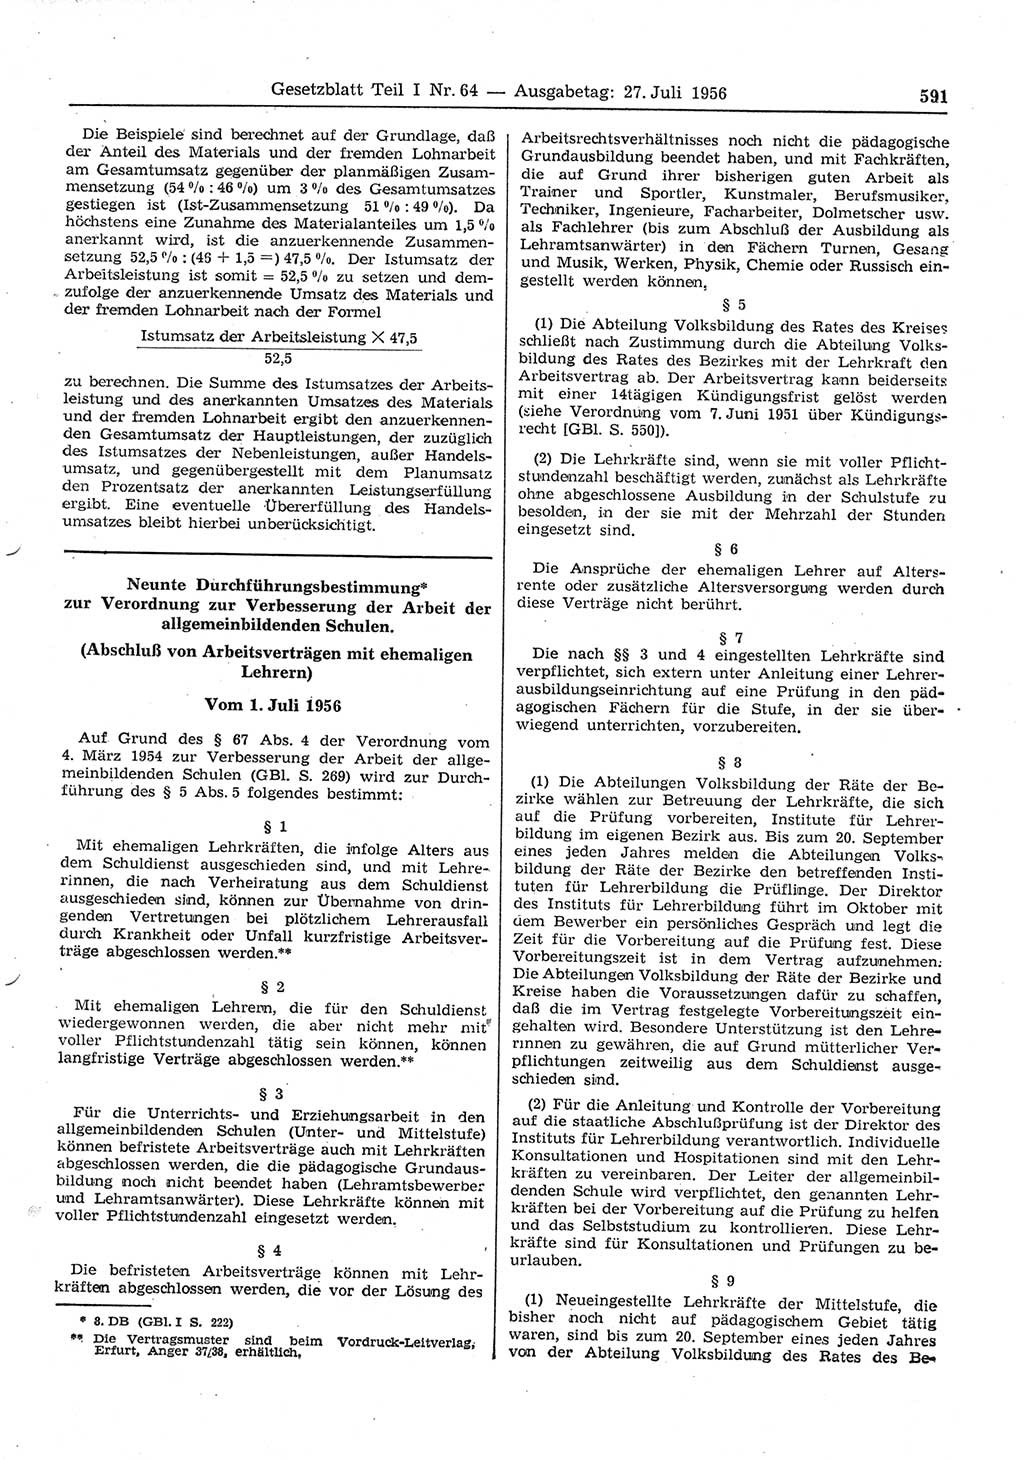 Gesetzblatt (GBl.) der Deutschen Demokratischen Republik (DDR) Teil Ⅰ 1956, Seite 591 (GBl. DDR Ⅰ 1956, S. 591)